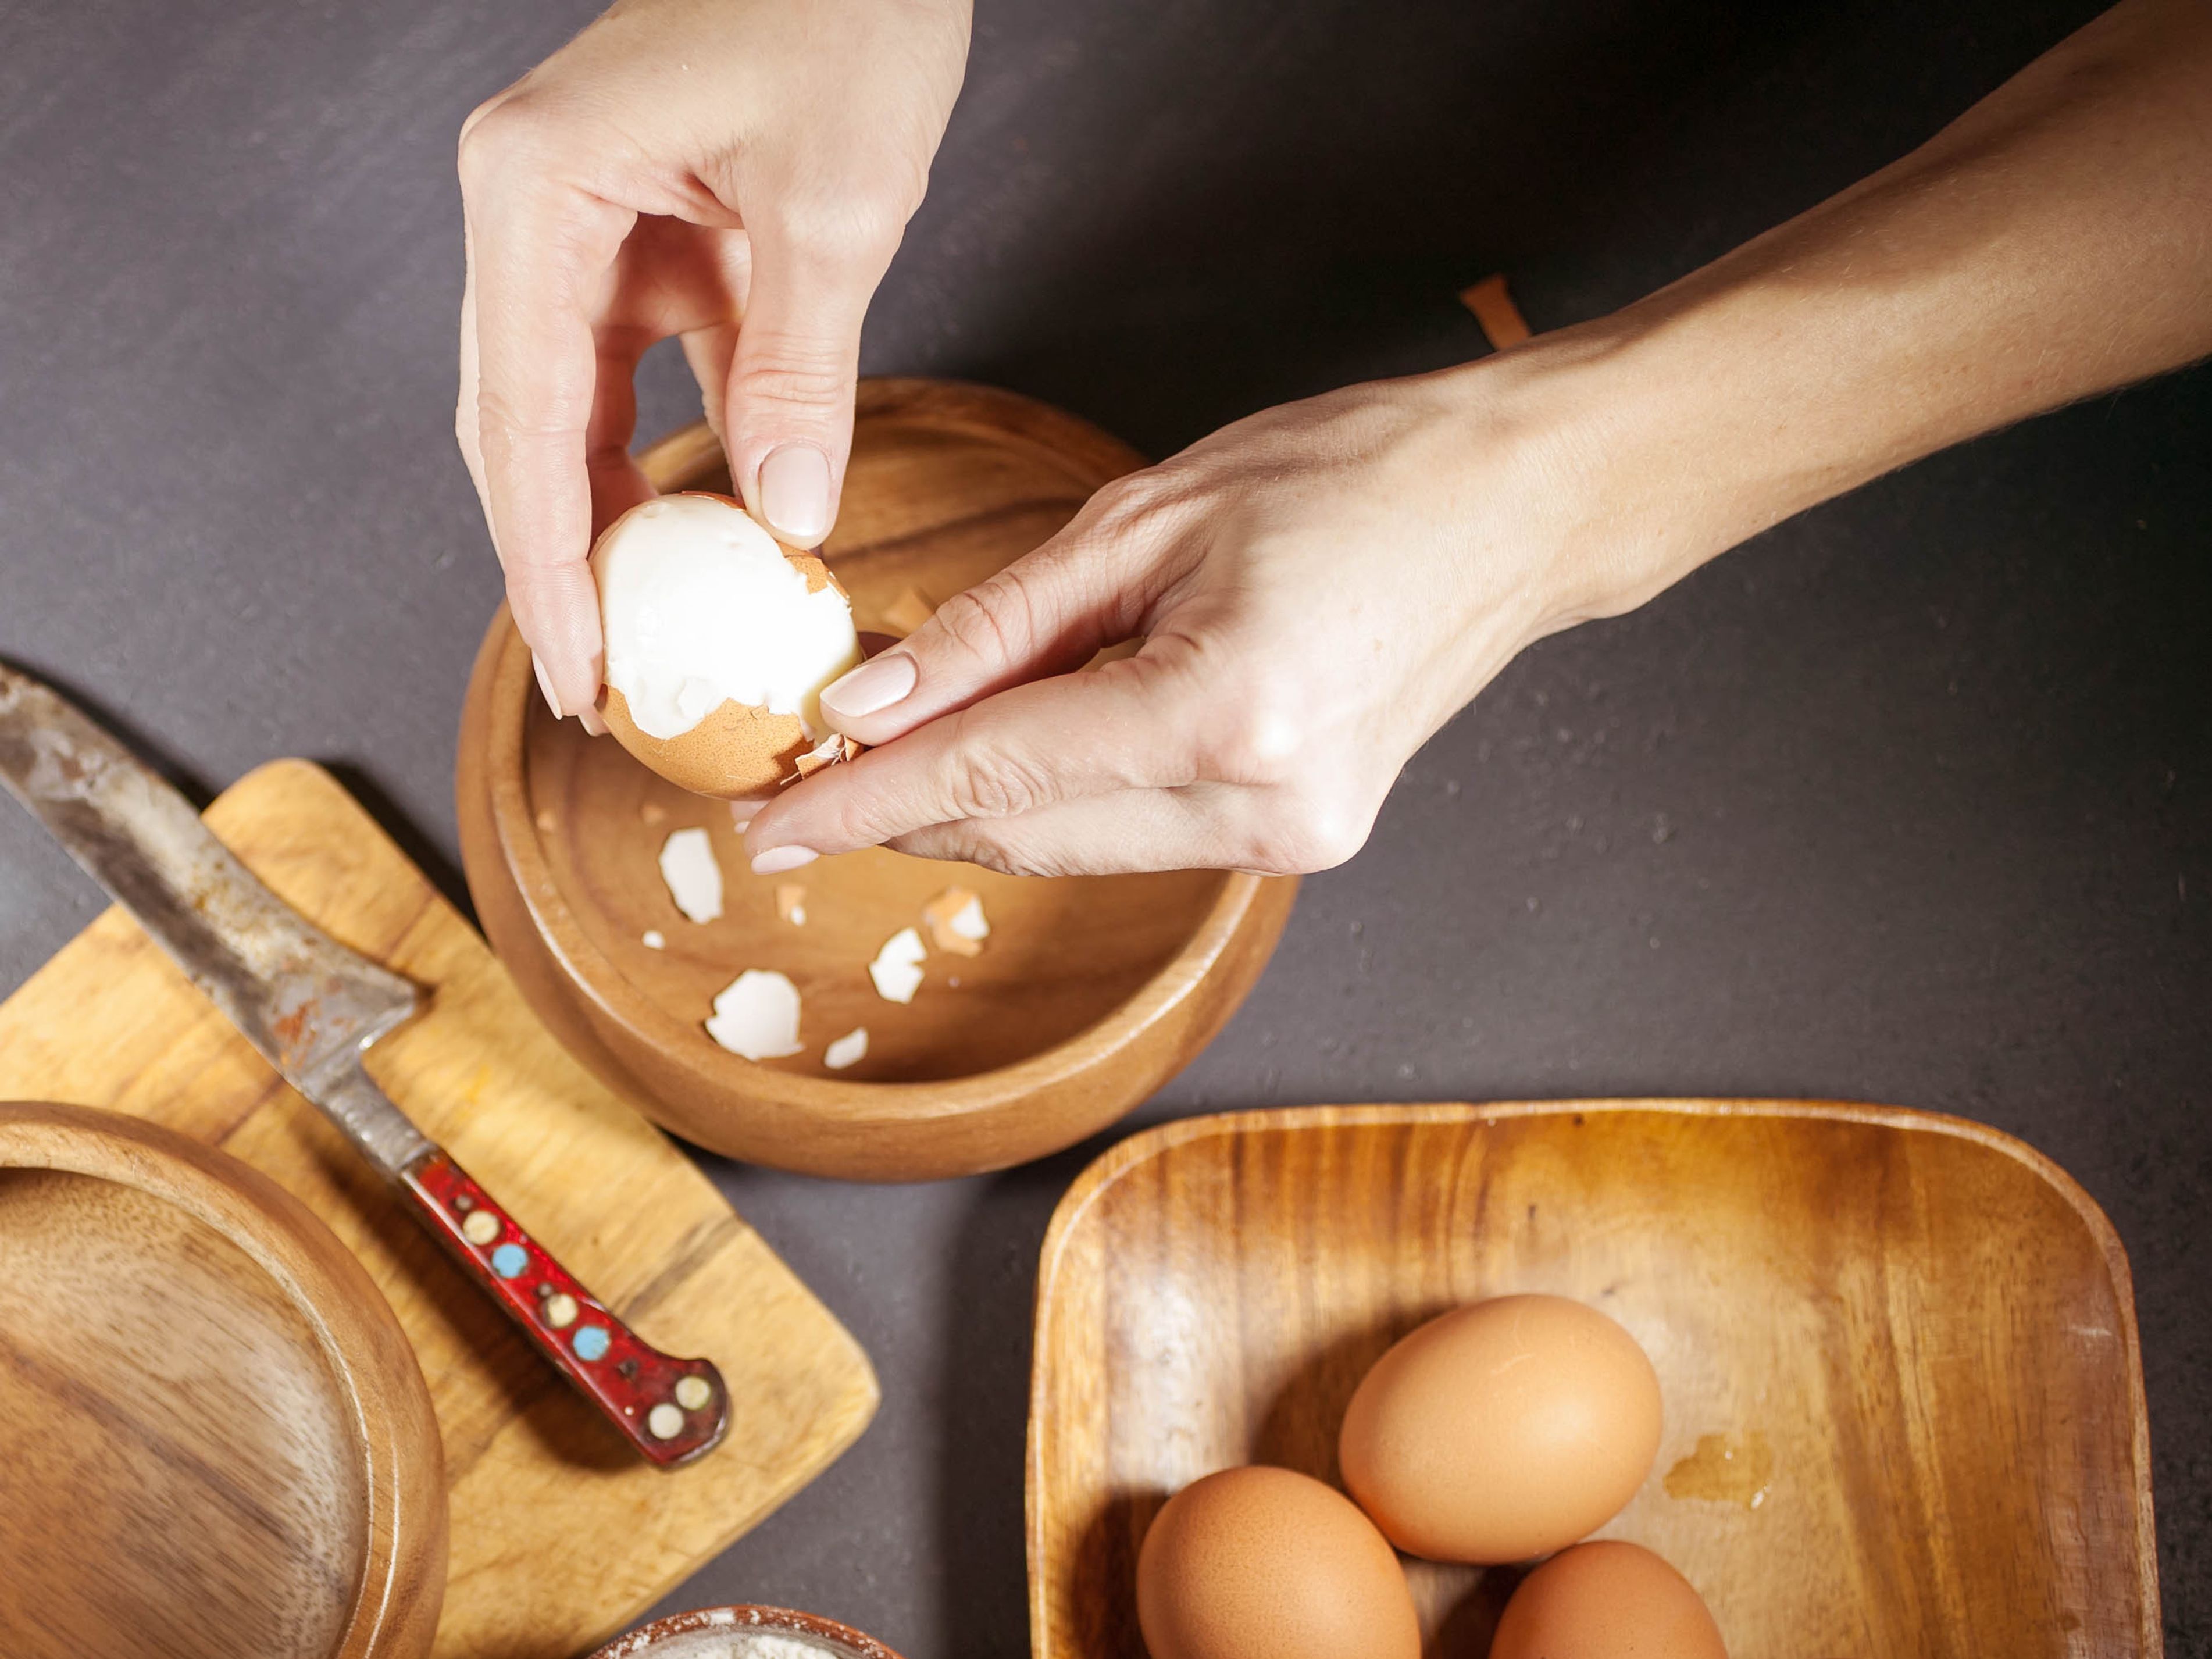 Comment écaler un œuf dur facilement - CNPO